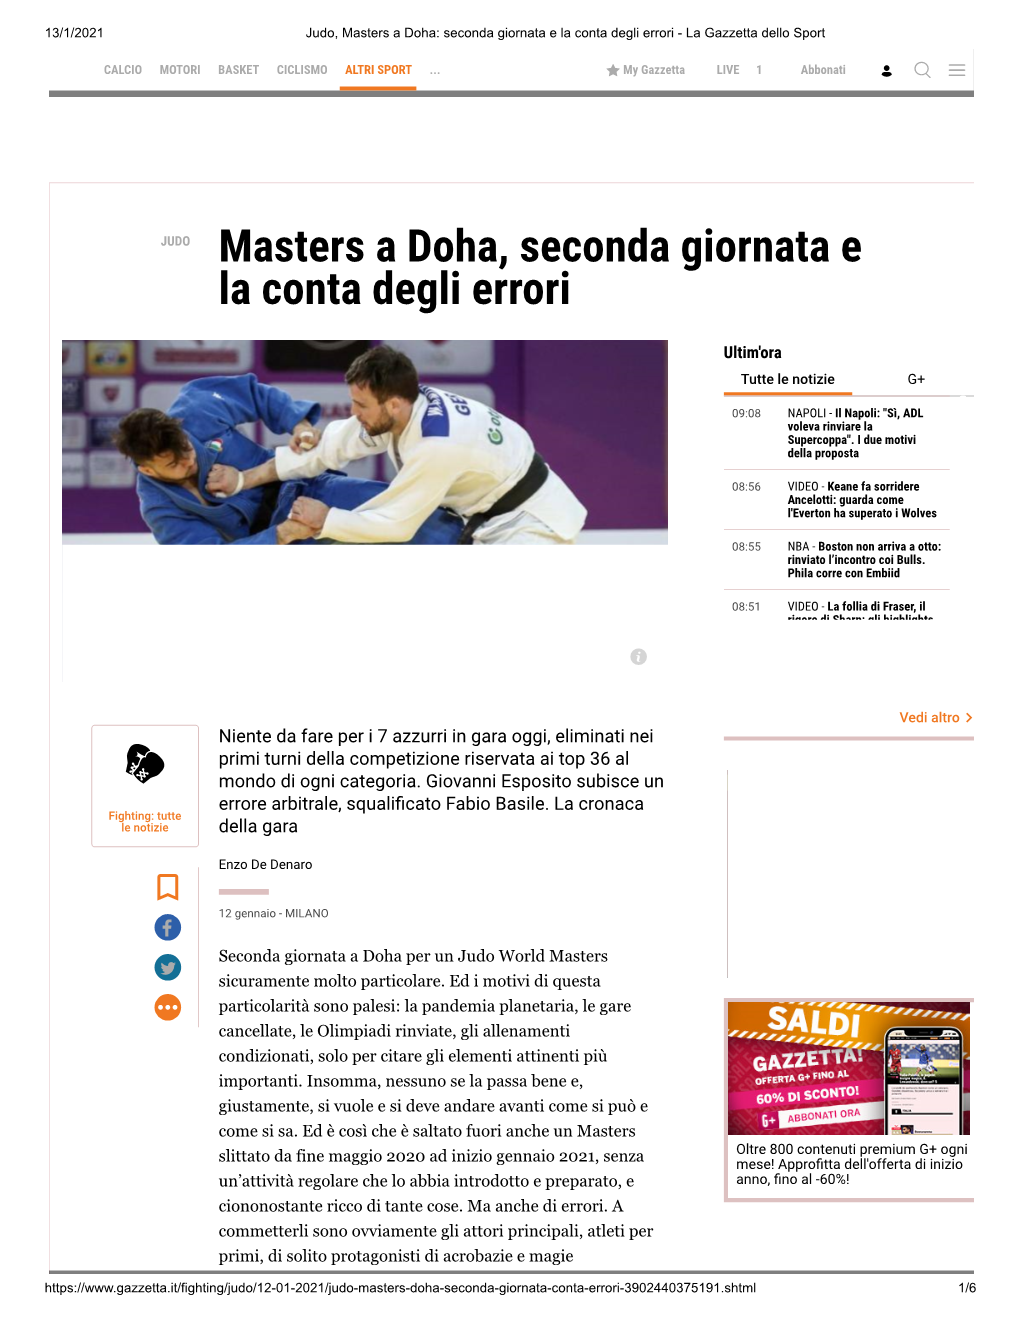 Judo, Masters a Doha: Seconda Giornata E La Conta Degli Errori - La Gazzetta Dello Sport